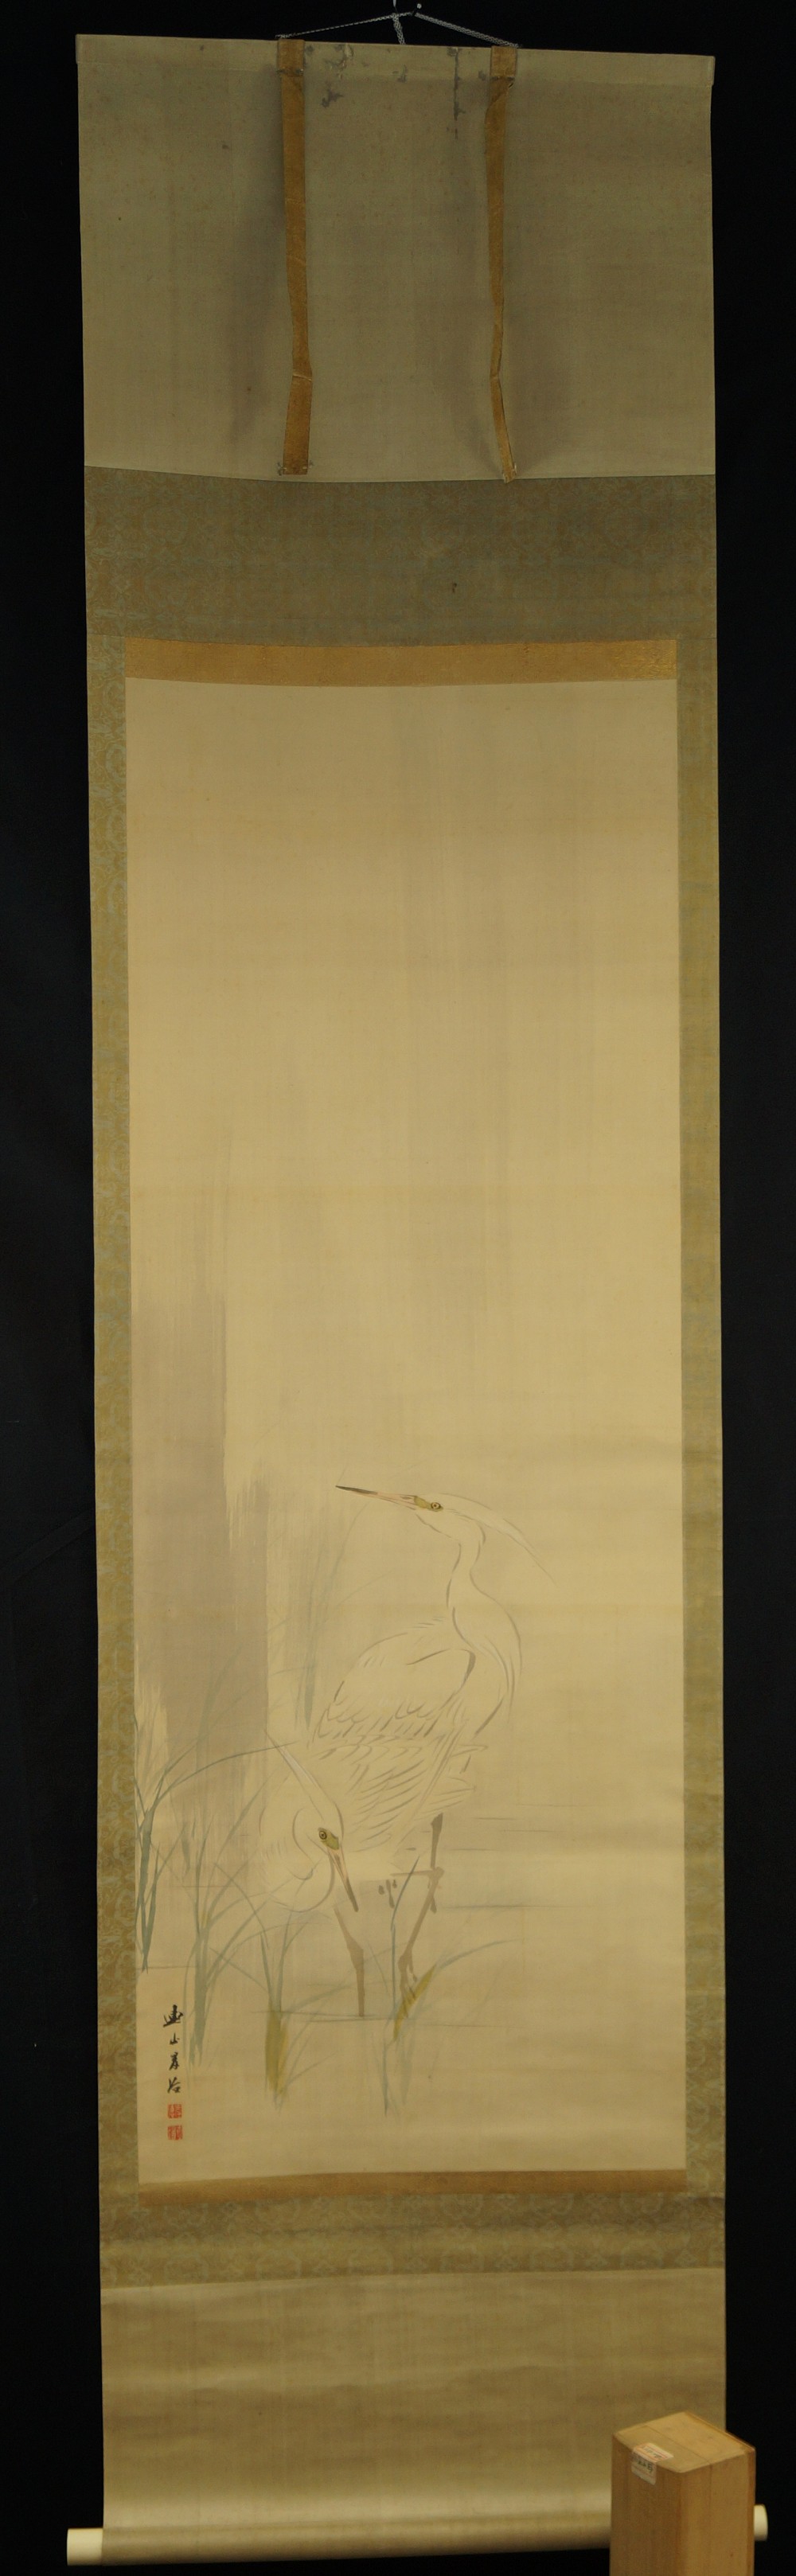 Zwei weiße Reiher - Japanisches Rollbild (Kakejiku, Kakemono)